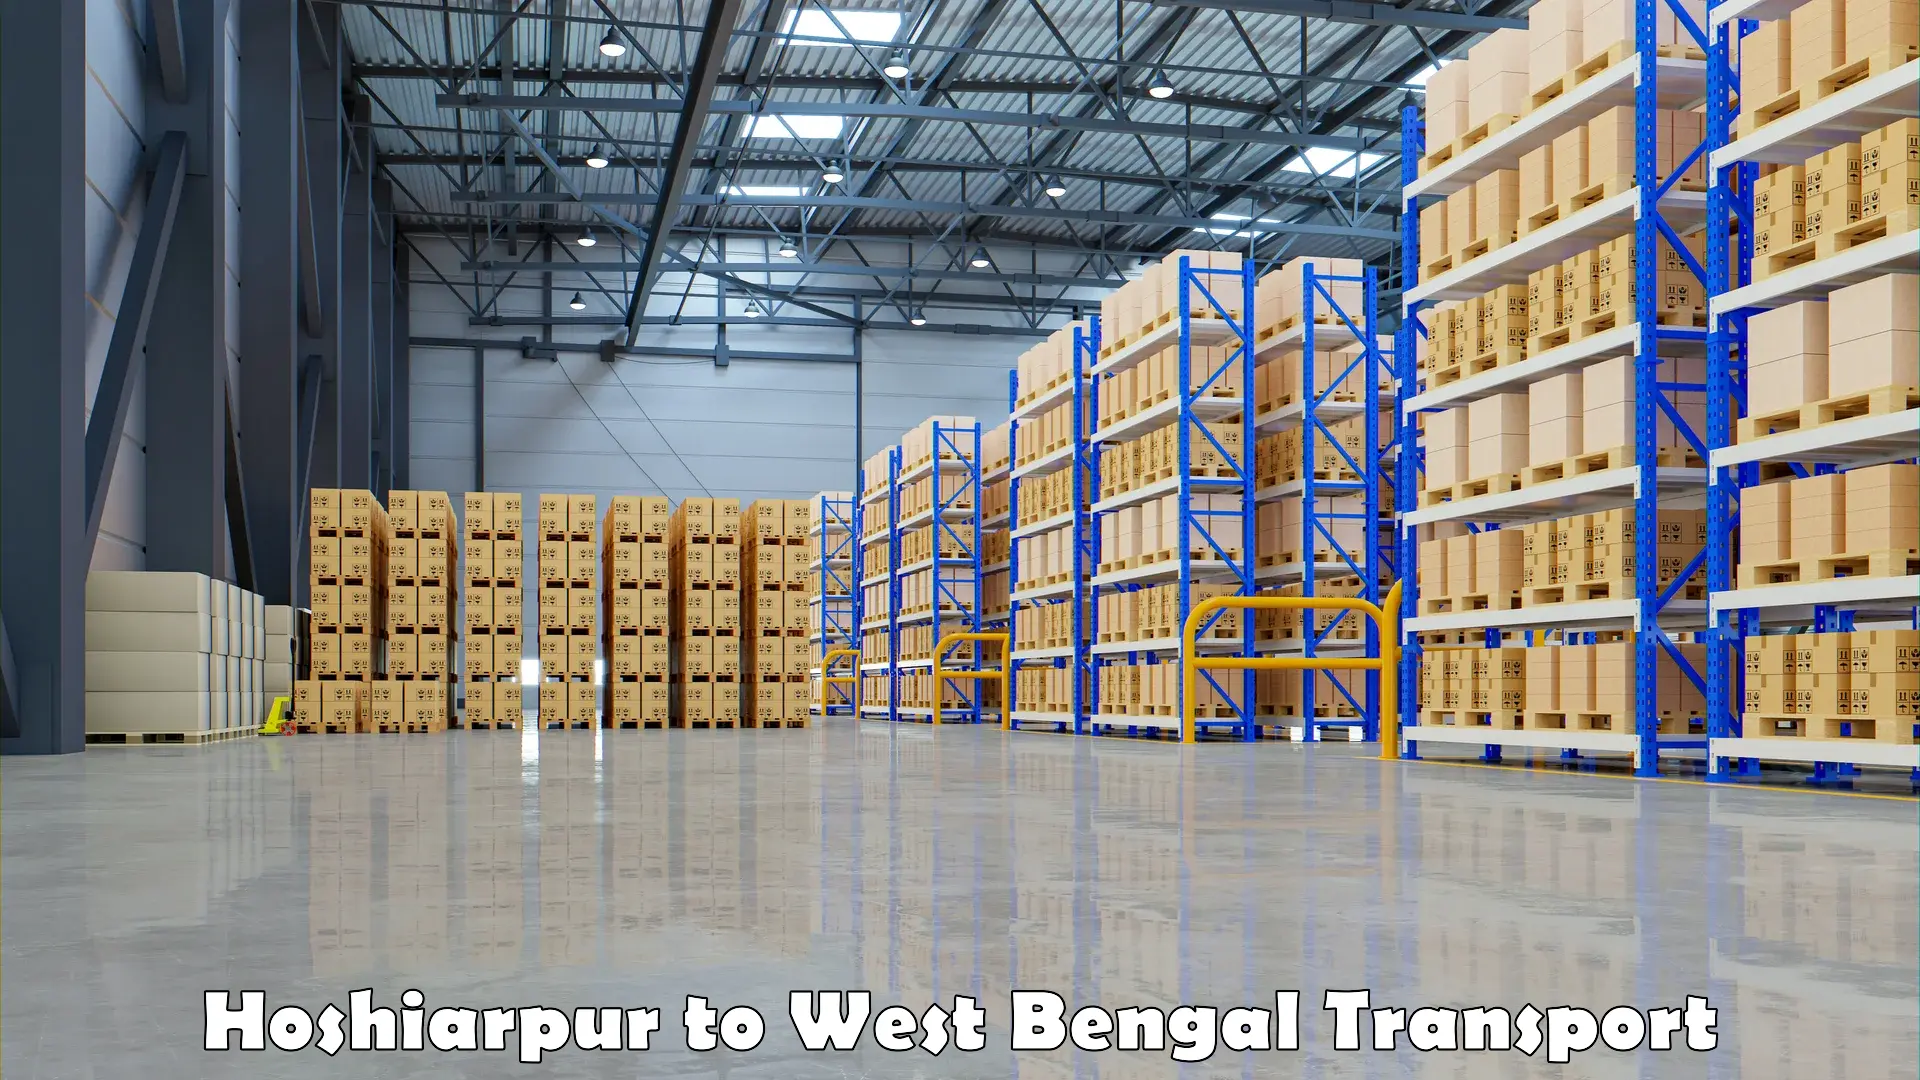 Lorry transport service Hoshiarpur to Kolkata Port